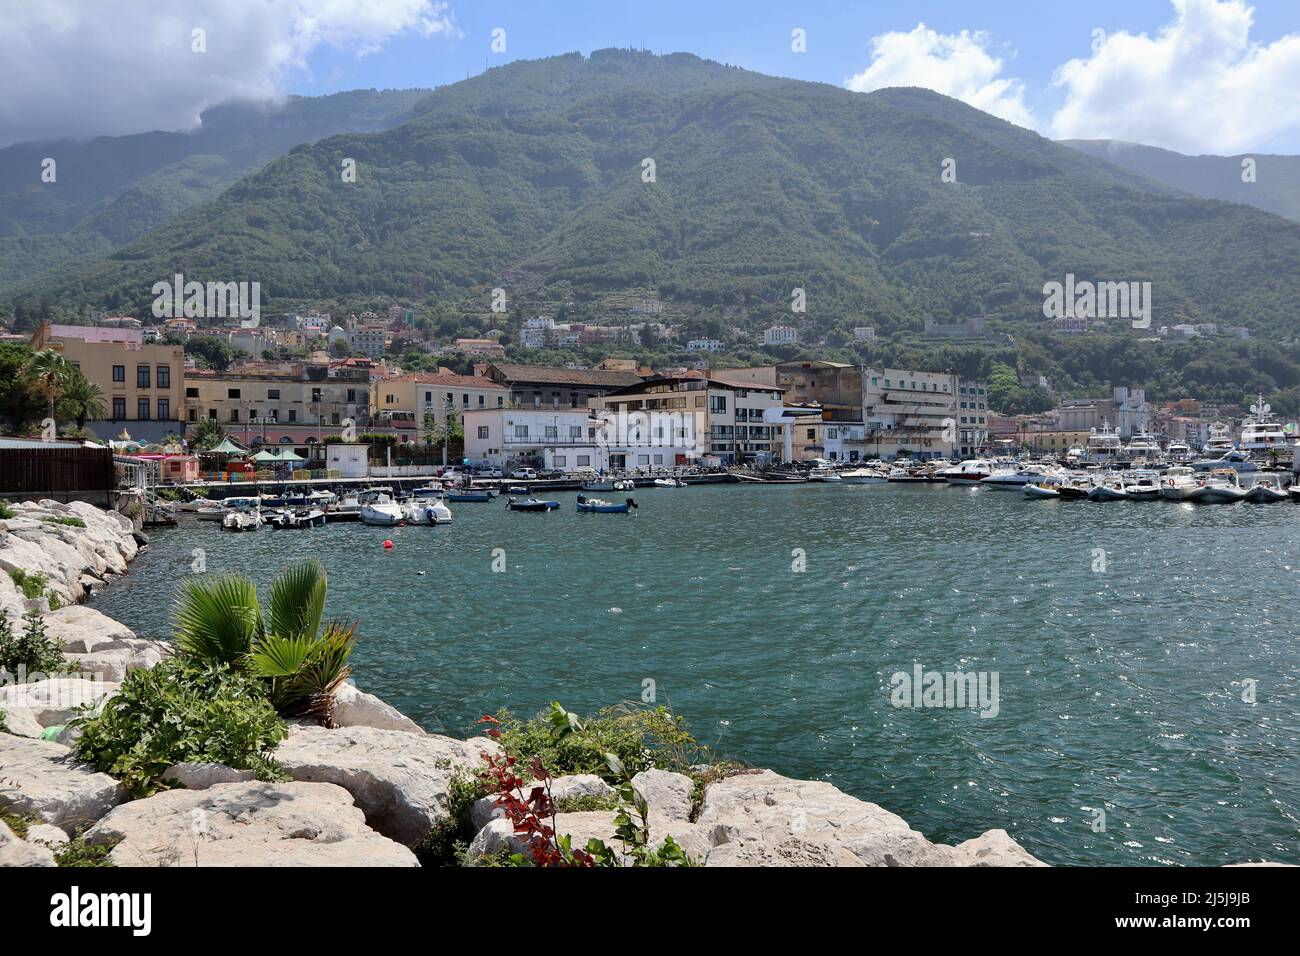 Castellammare di Stabia - Scorcio del porto turistico dalla scogliera frangiflutti Stock Photo